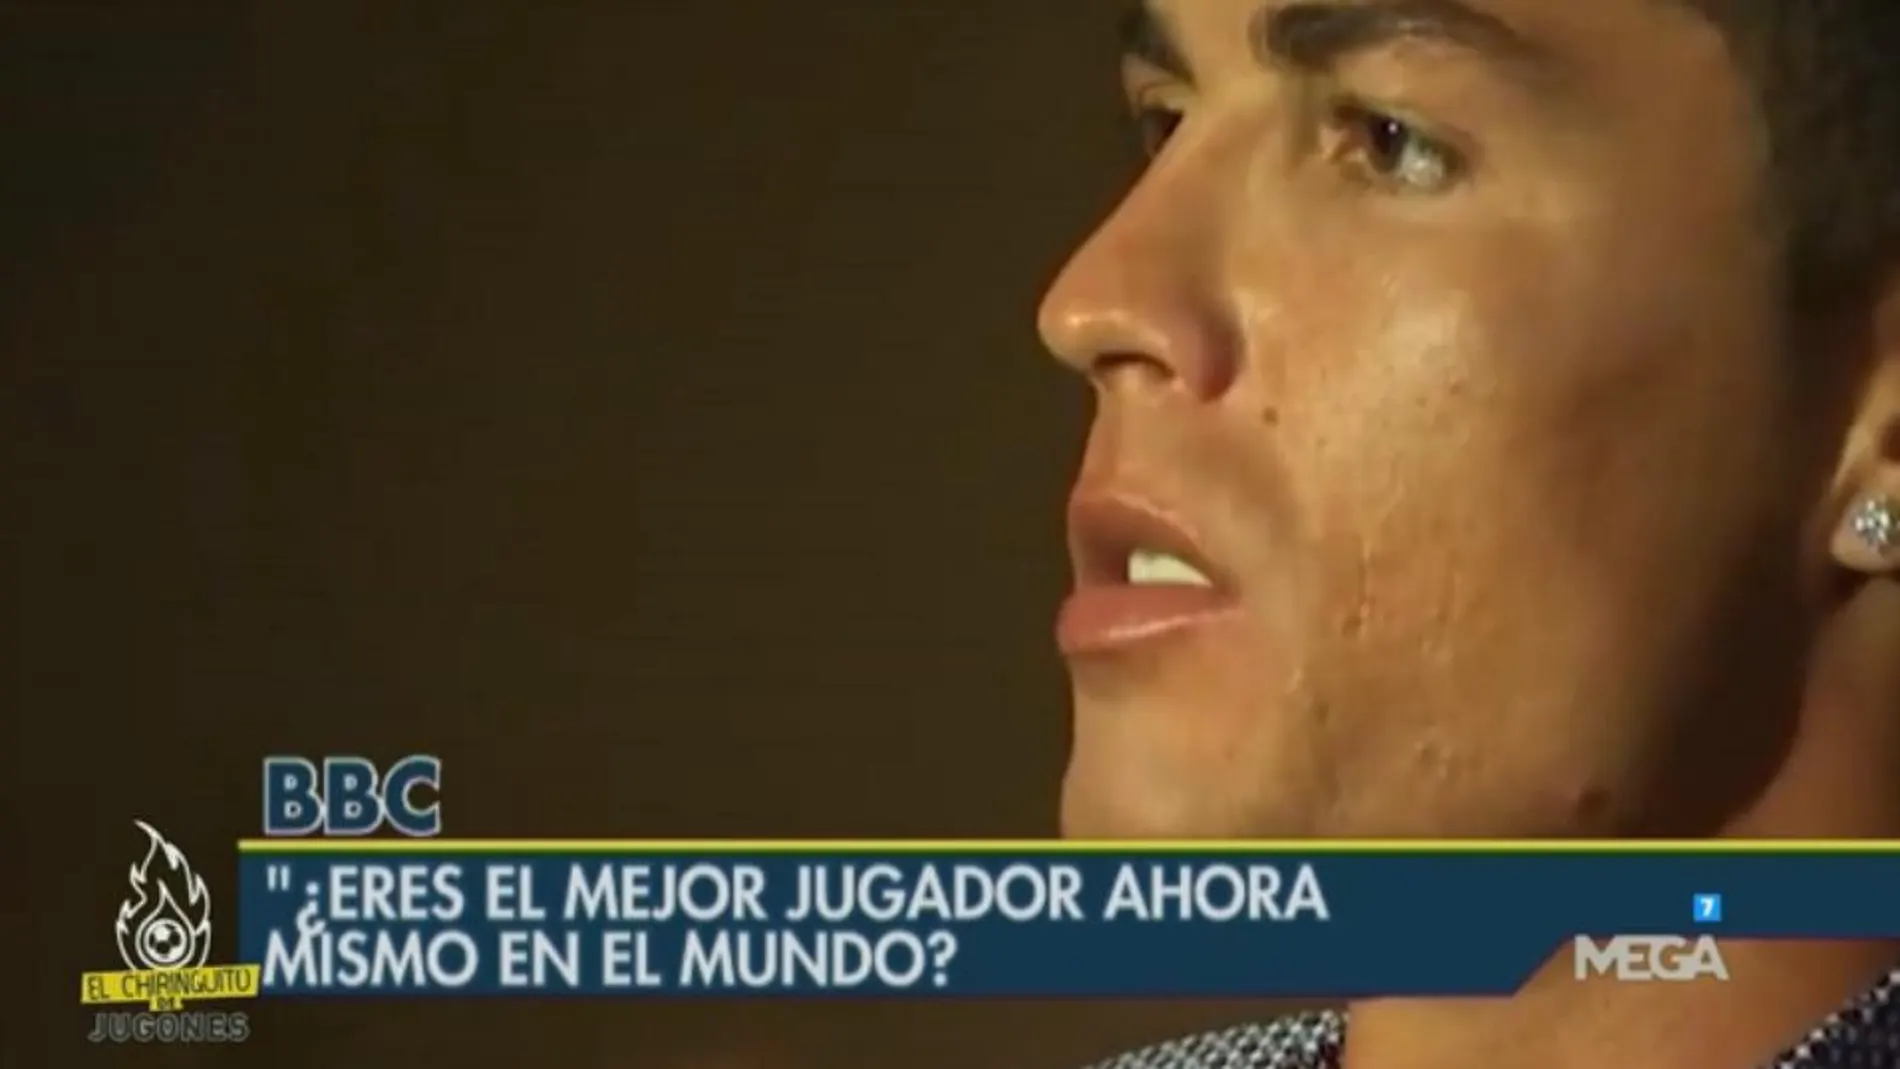 Cristiano Ronaldo en la BBC